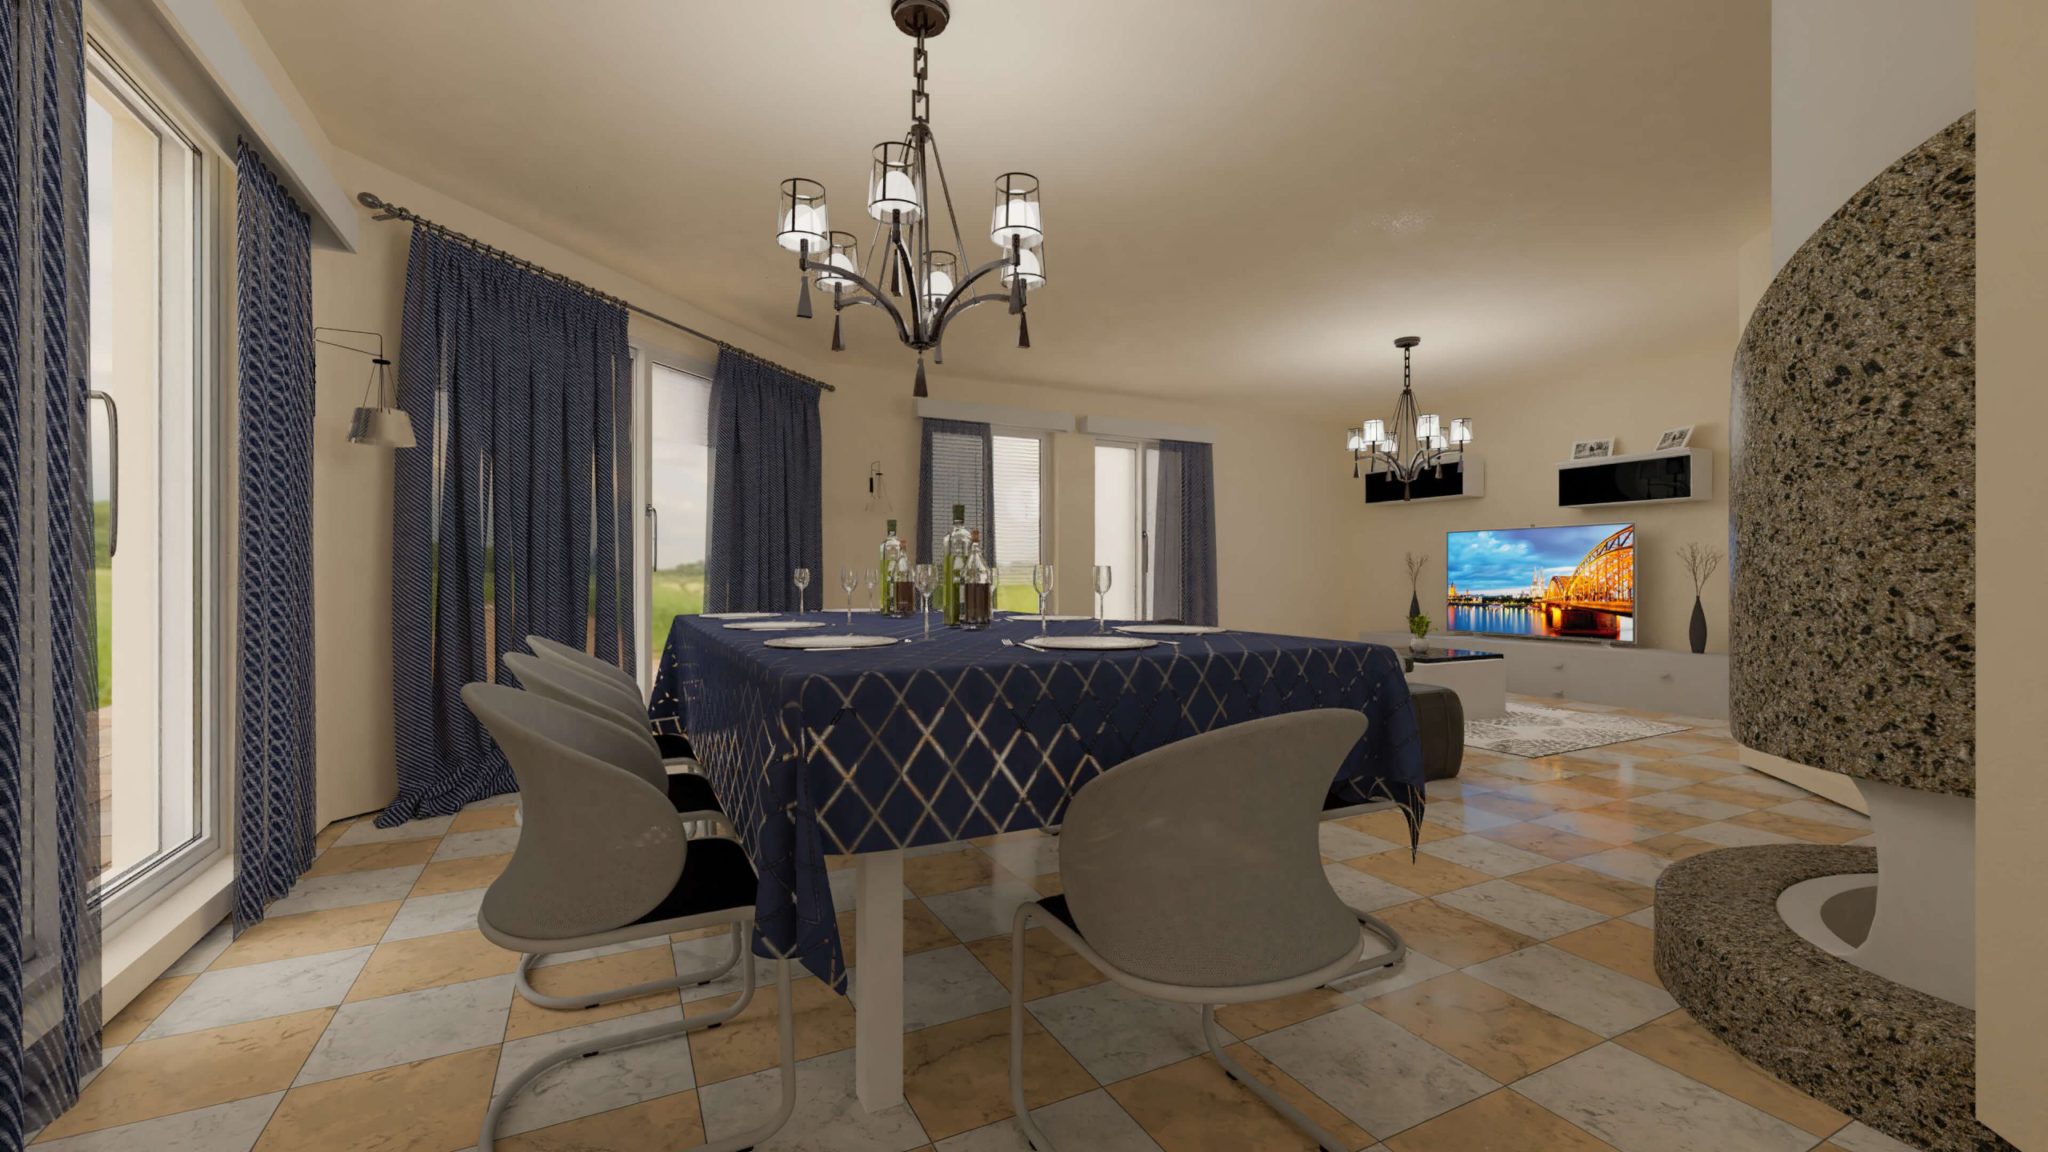 Modélisation 3D d'un salon élégant avec table dressée pour la salle à manger et une cheminée chaleureuse, réalisée par Capture Immo.